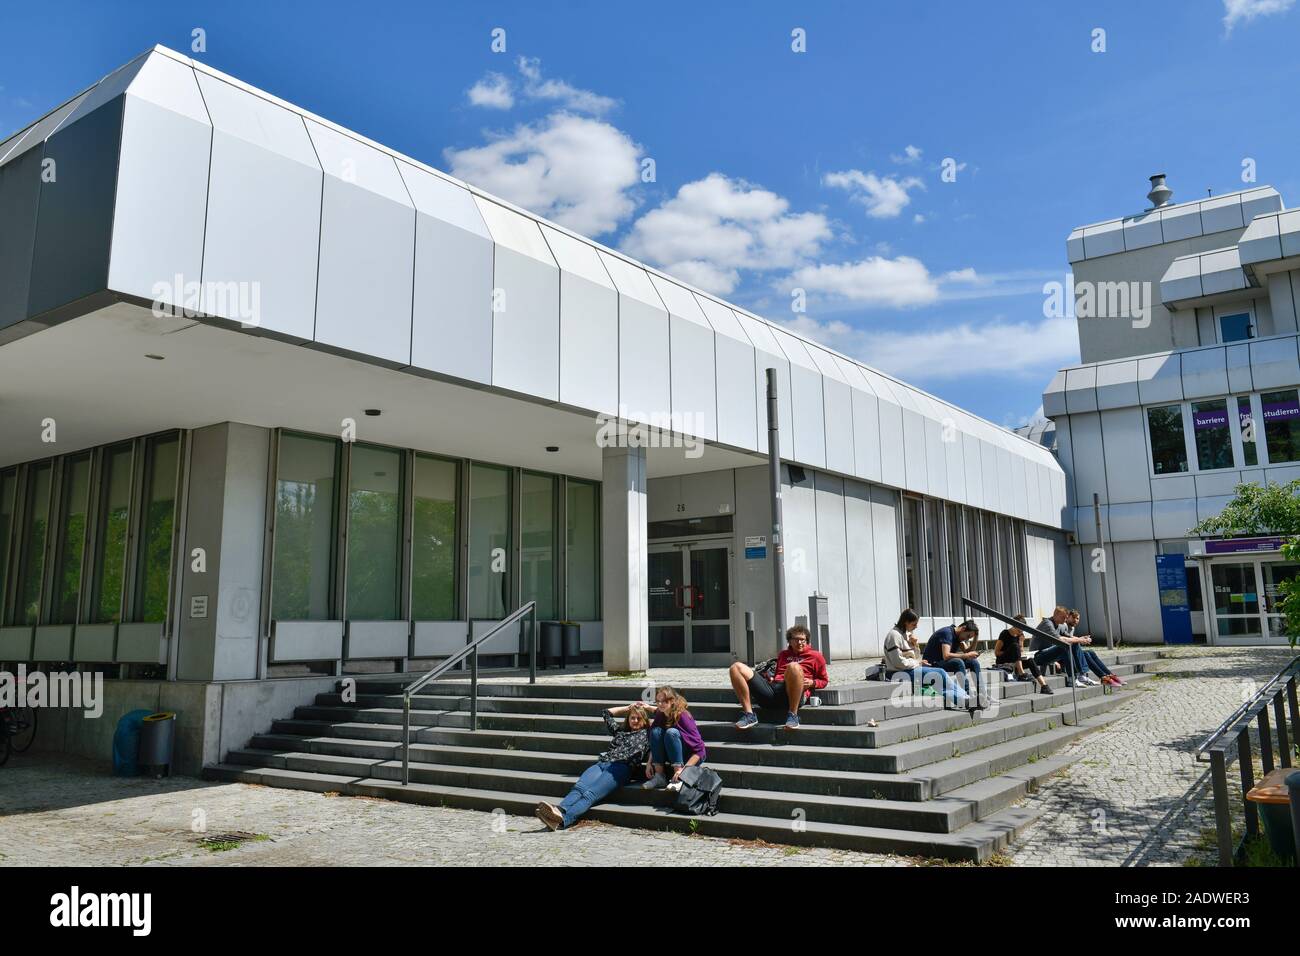 Silberlaube, Freie Universität, Habelschwerdter Allee, Dahlem, Steglitz-Zehlendorf, Berlin, Deutschland Stock Photo